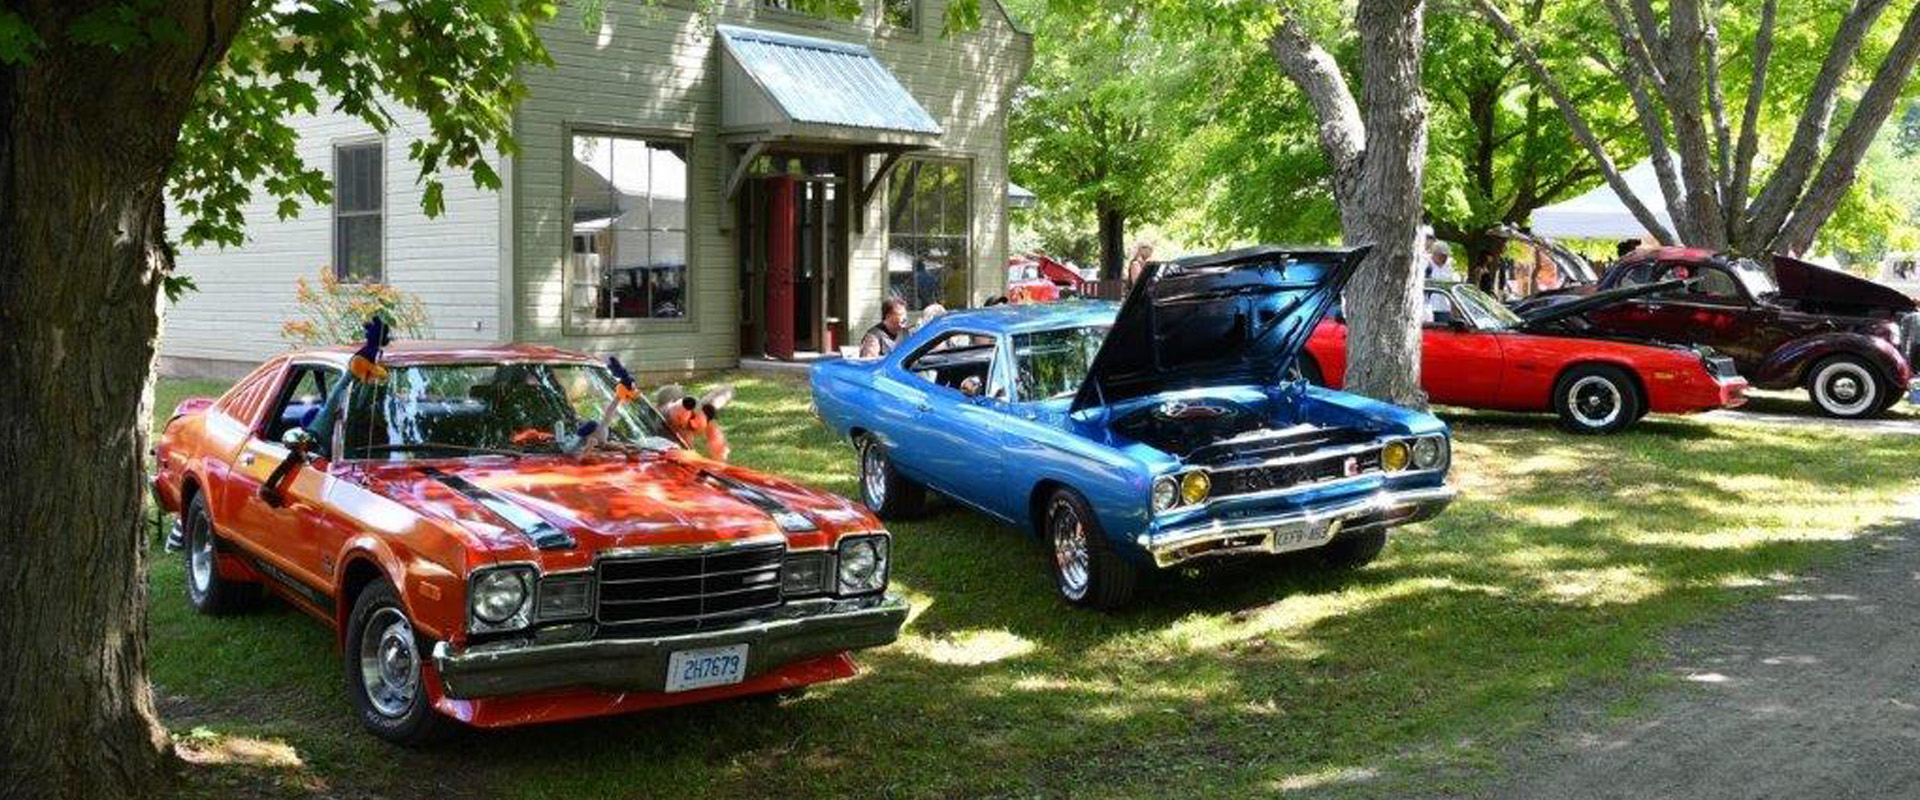 Antique Car Swap Meets In Ontario Antique Cars Blog